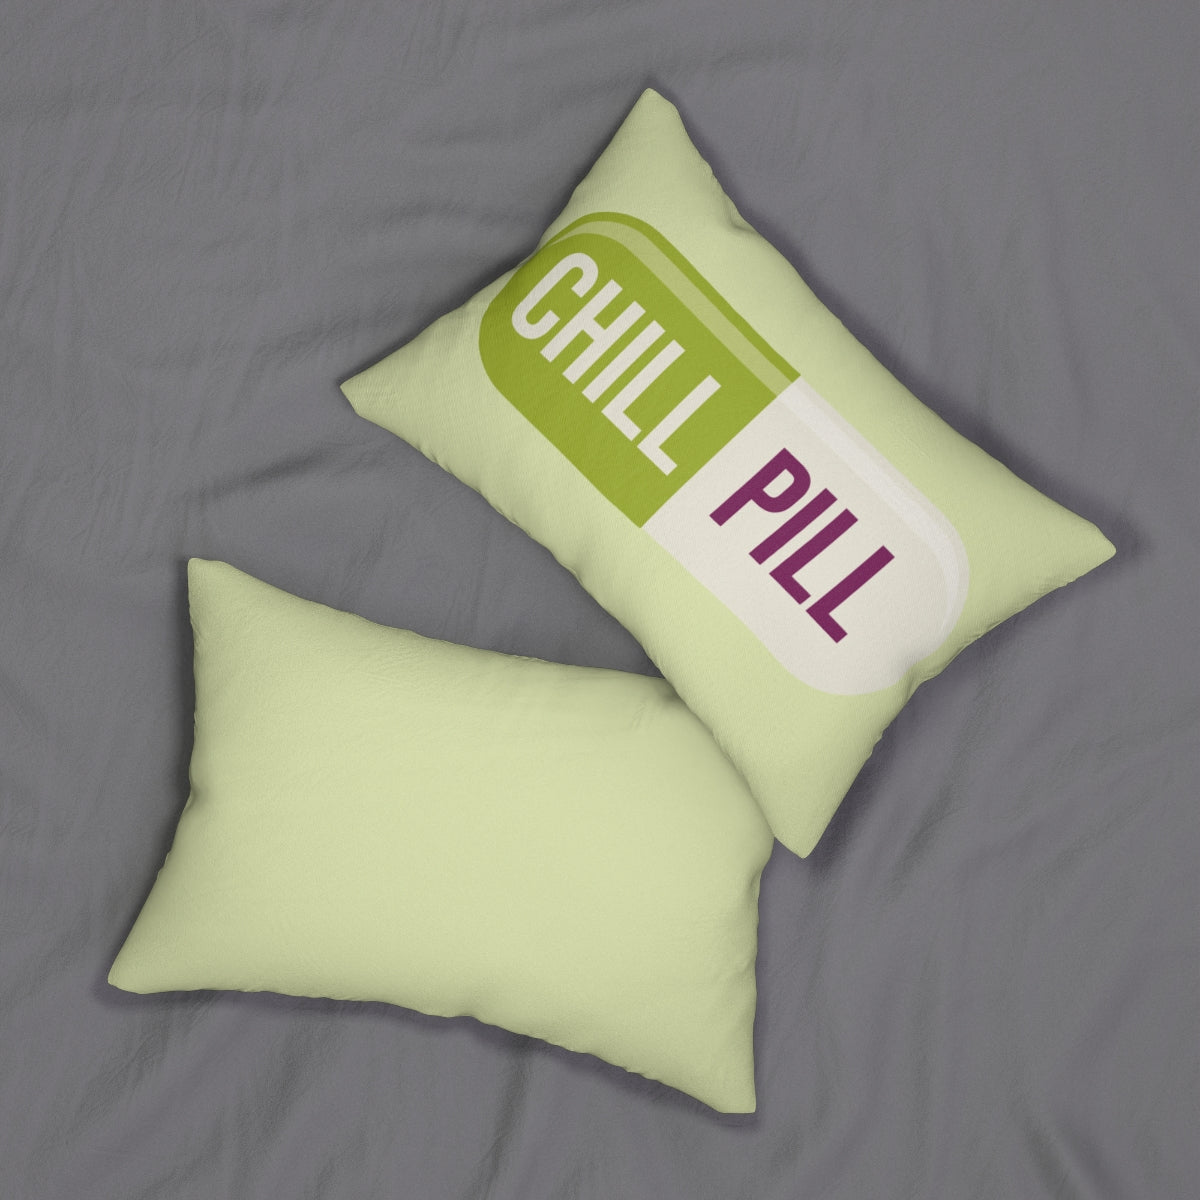 Chill Pill Pillow, Green